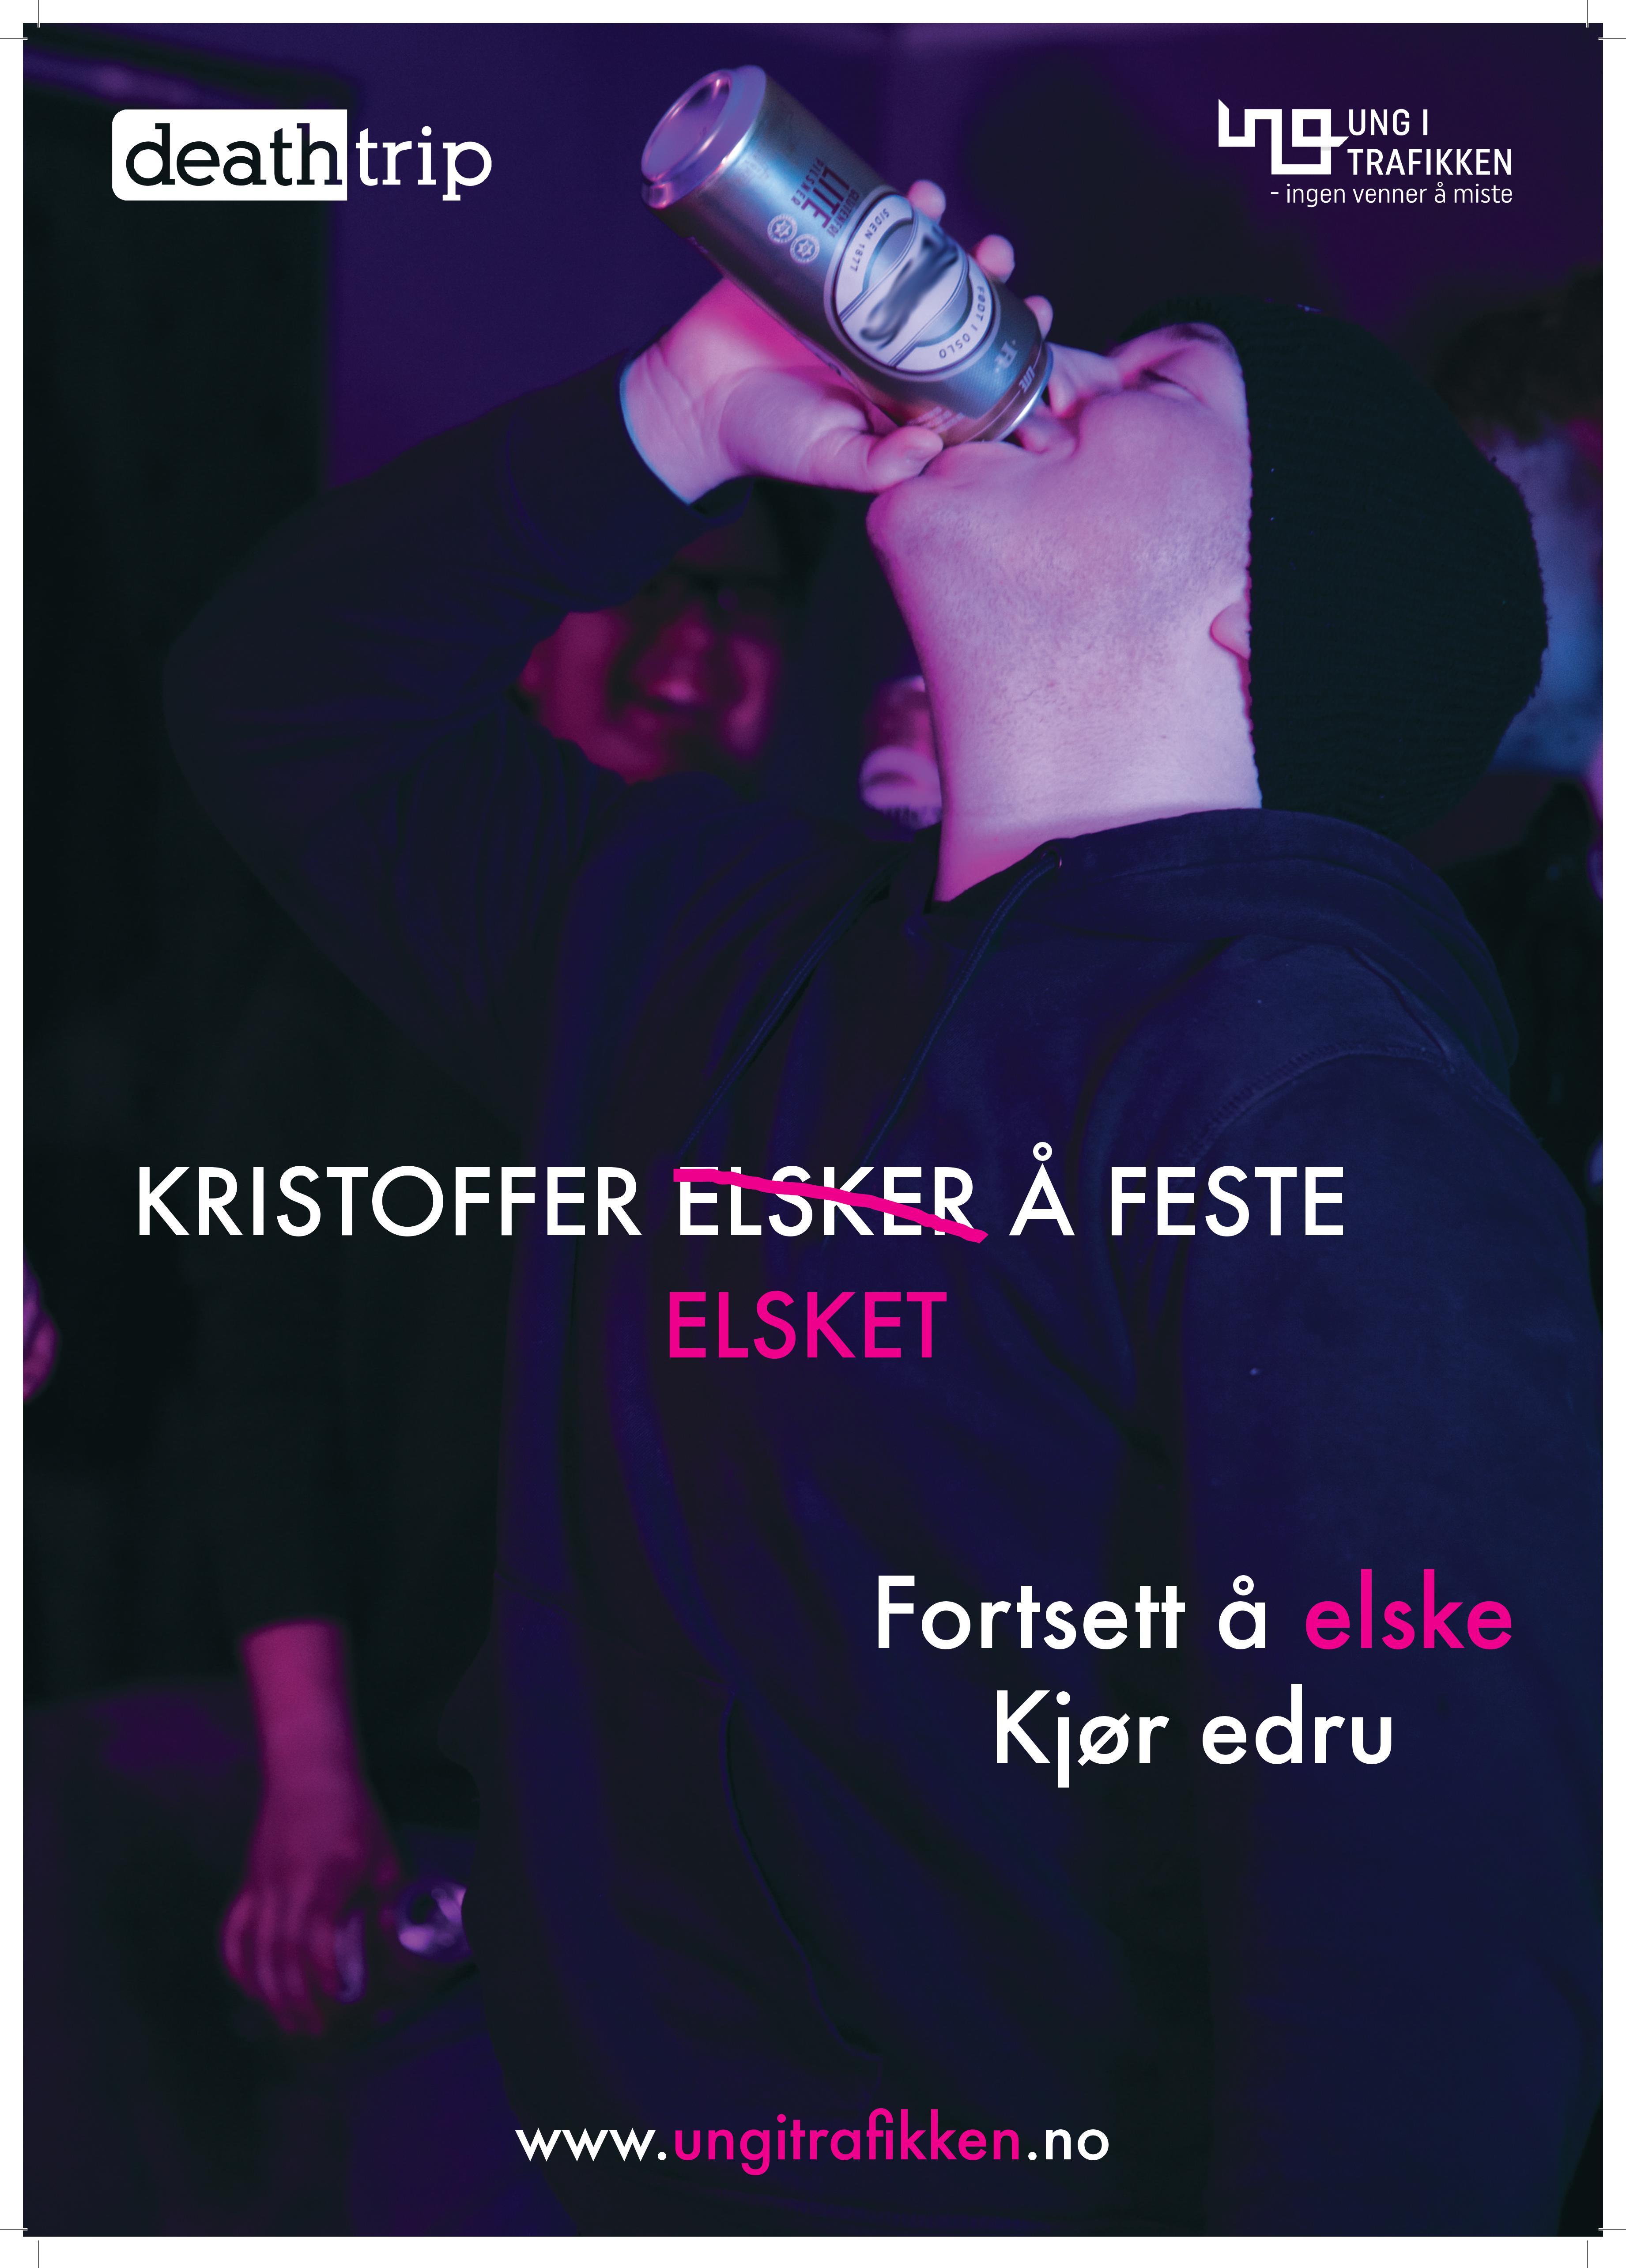 Plakat: Kristoffer elsket å feste. Fortsett å elske. Kjør edru.